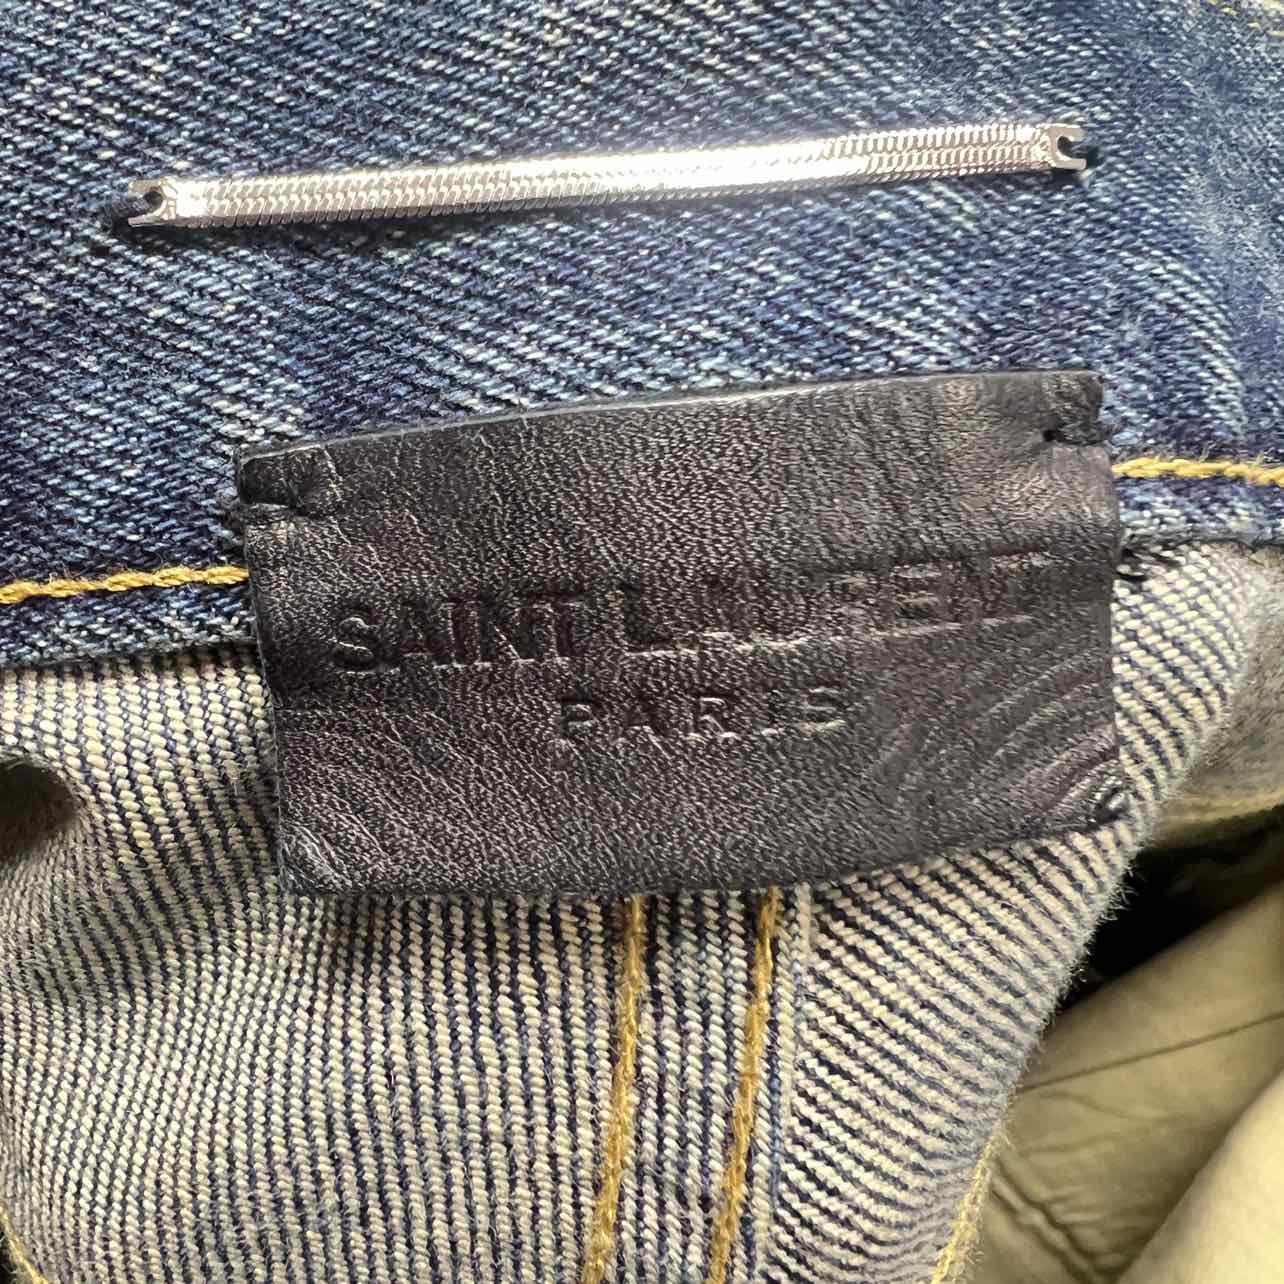 Saint Laurent Jeans &quot;LIGHT WASH&quot; Blue Used Size 34